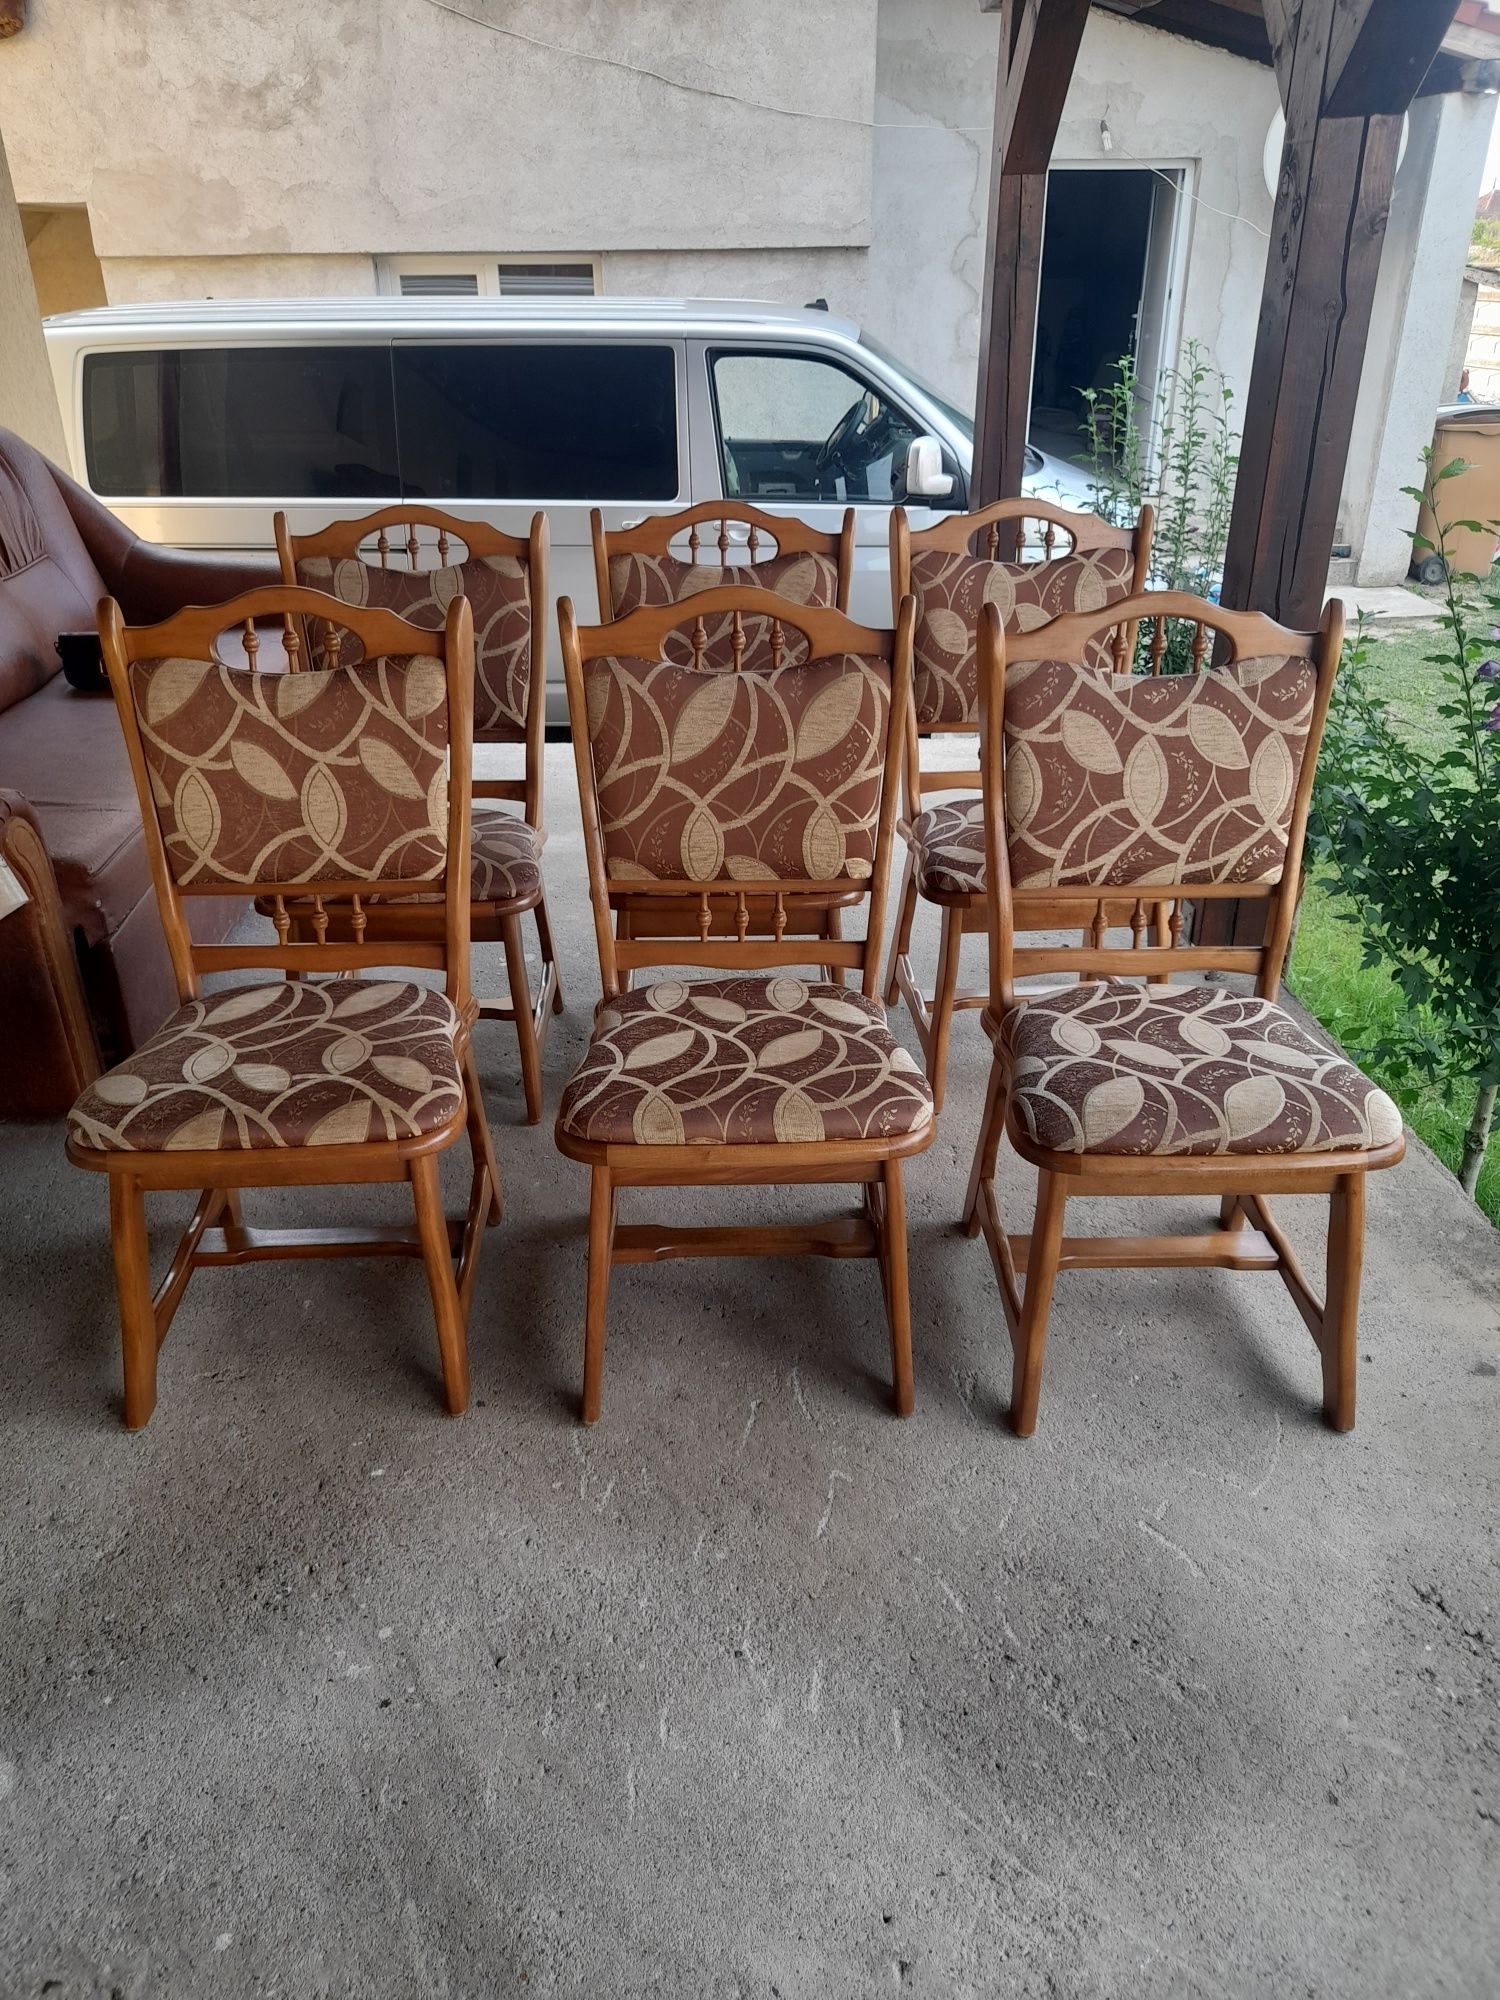 Vând 6 bucati scaune de lemn masiv